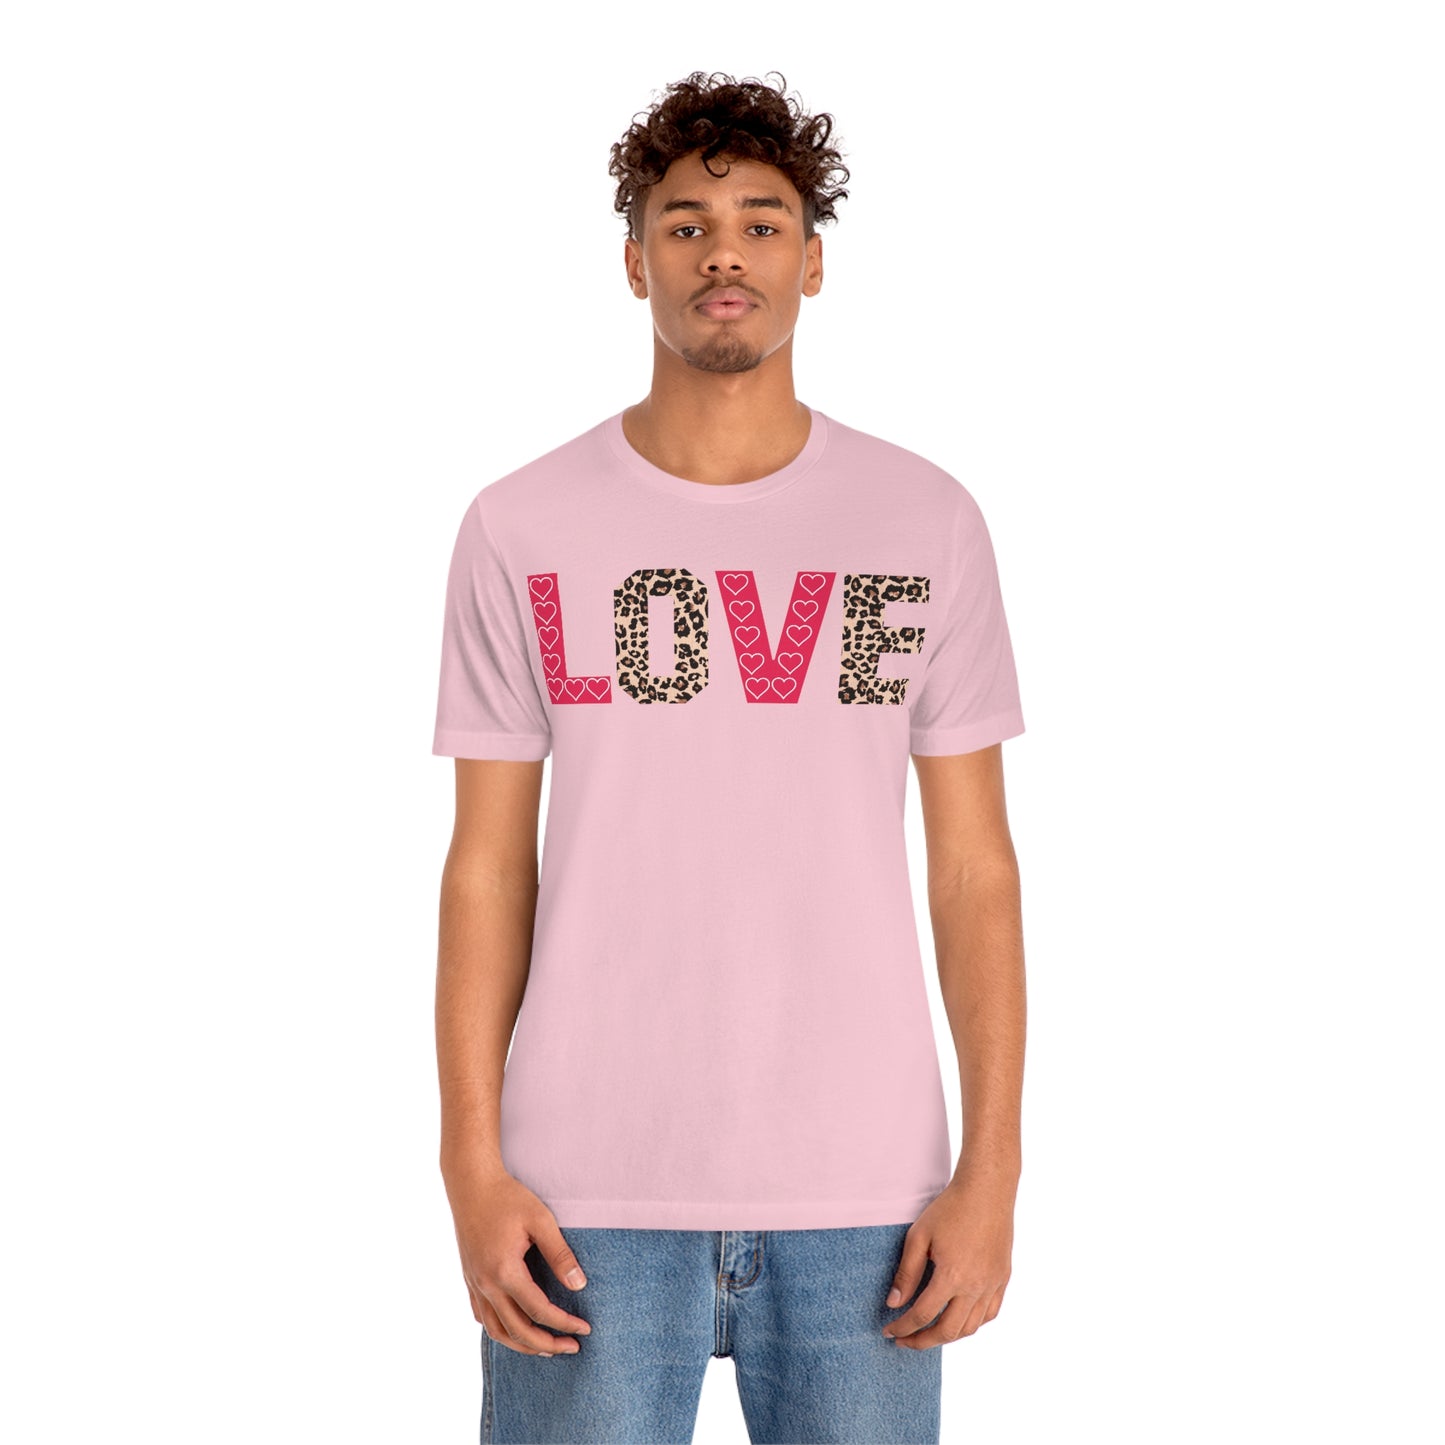 Love Shirt women